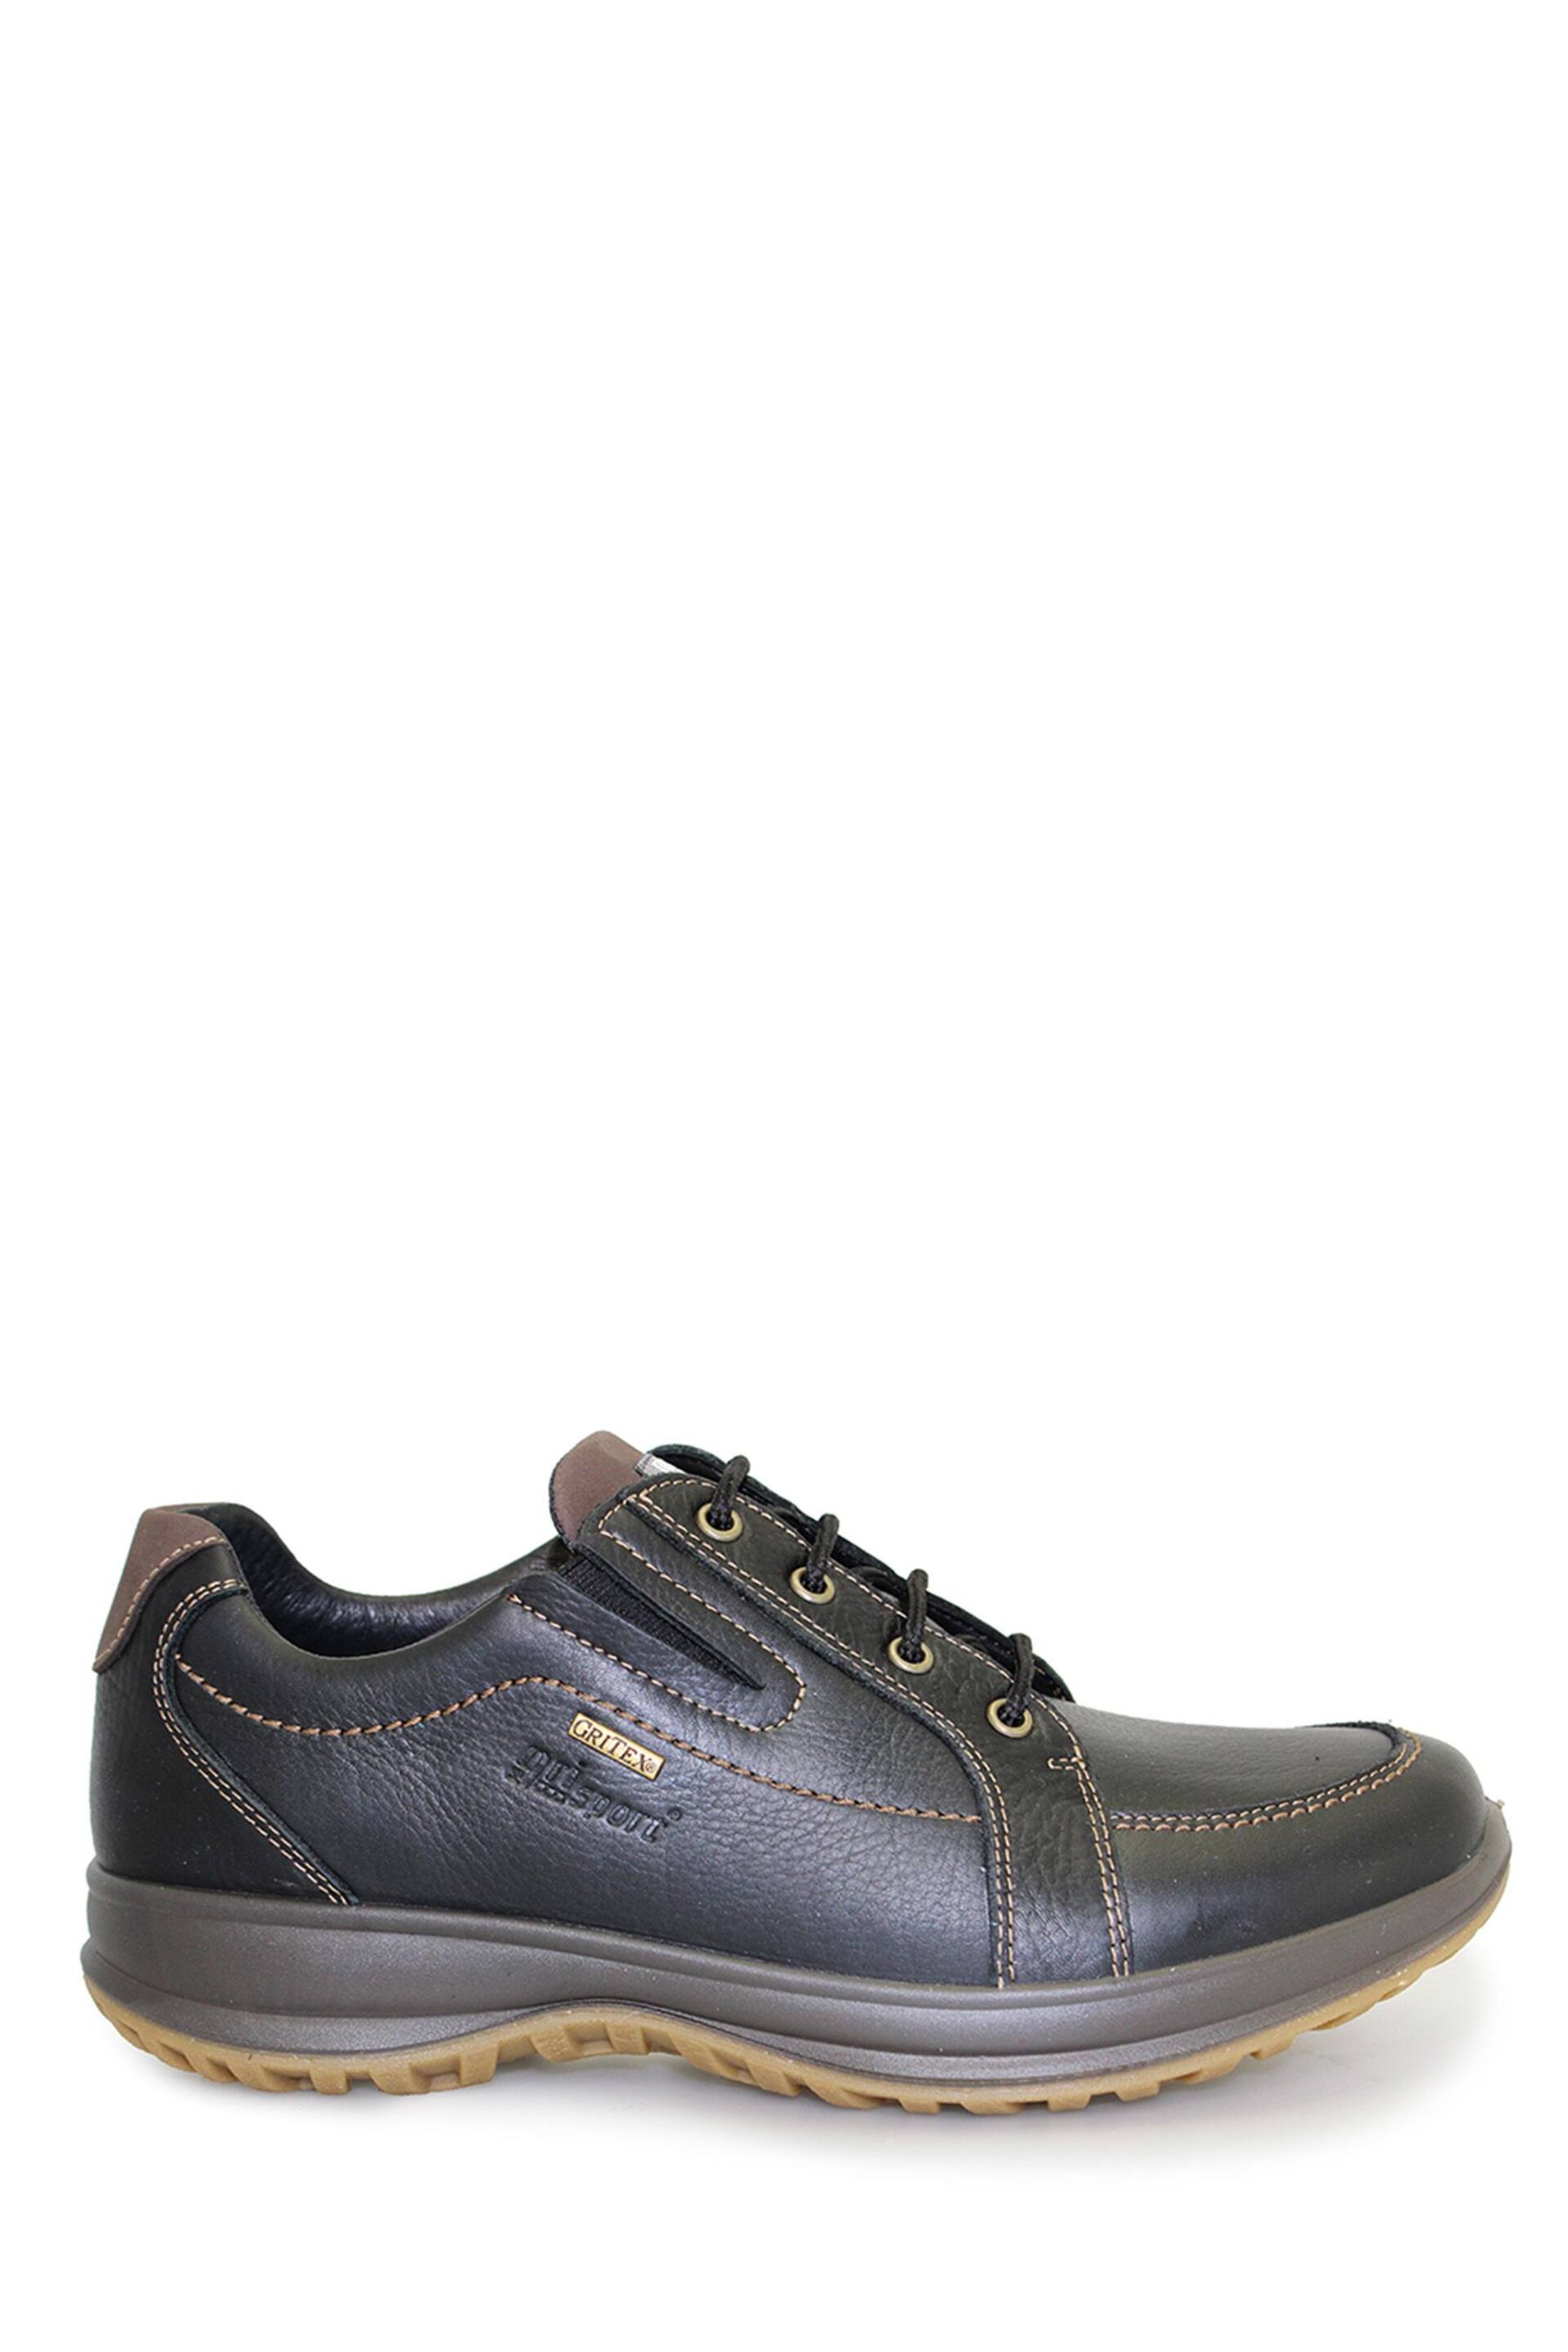 Grisport Ayr Black Comfort Shoes - Image 1 of 4